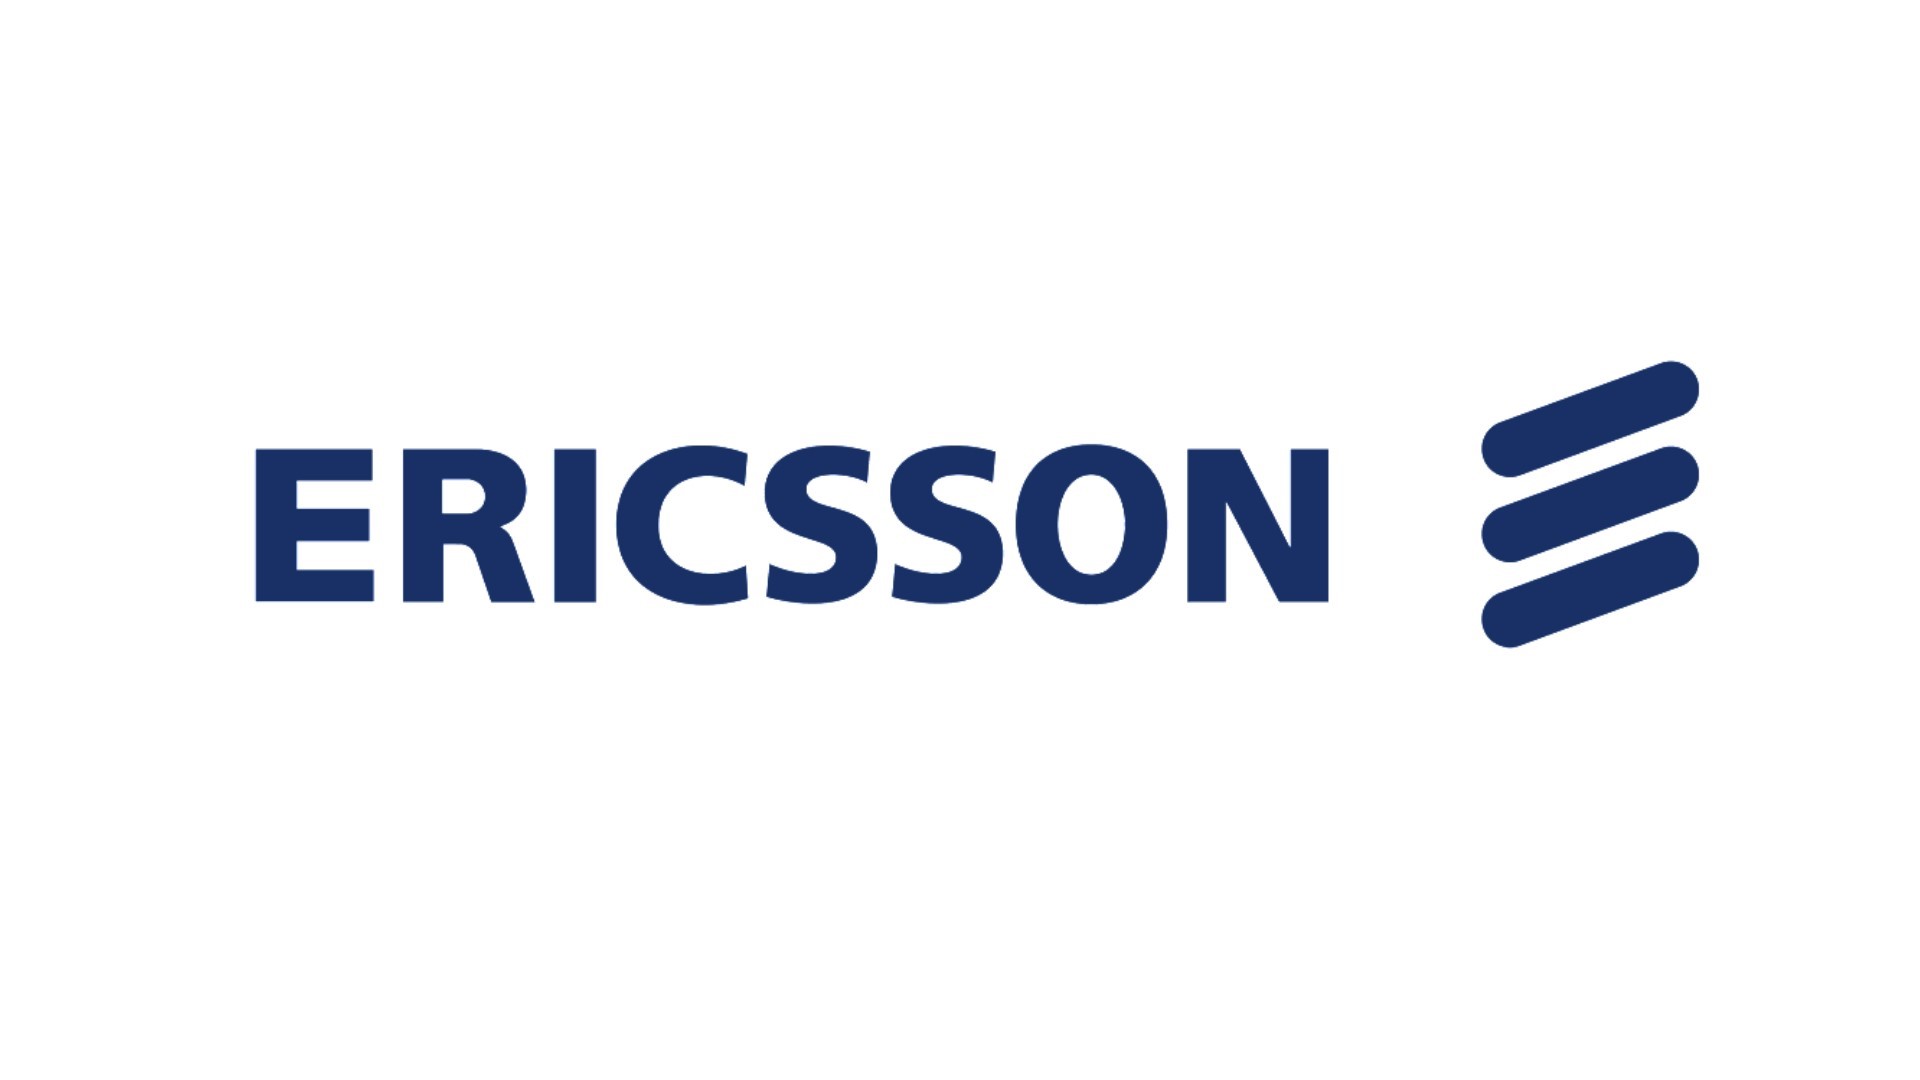 Ericsson ชนะประมูลเครือข่ายวิทยุ 5G ในจีนจาก China Telecom และ China Unicom